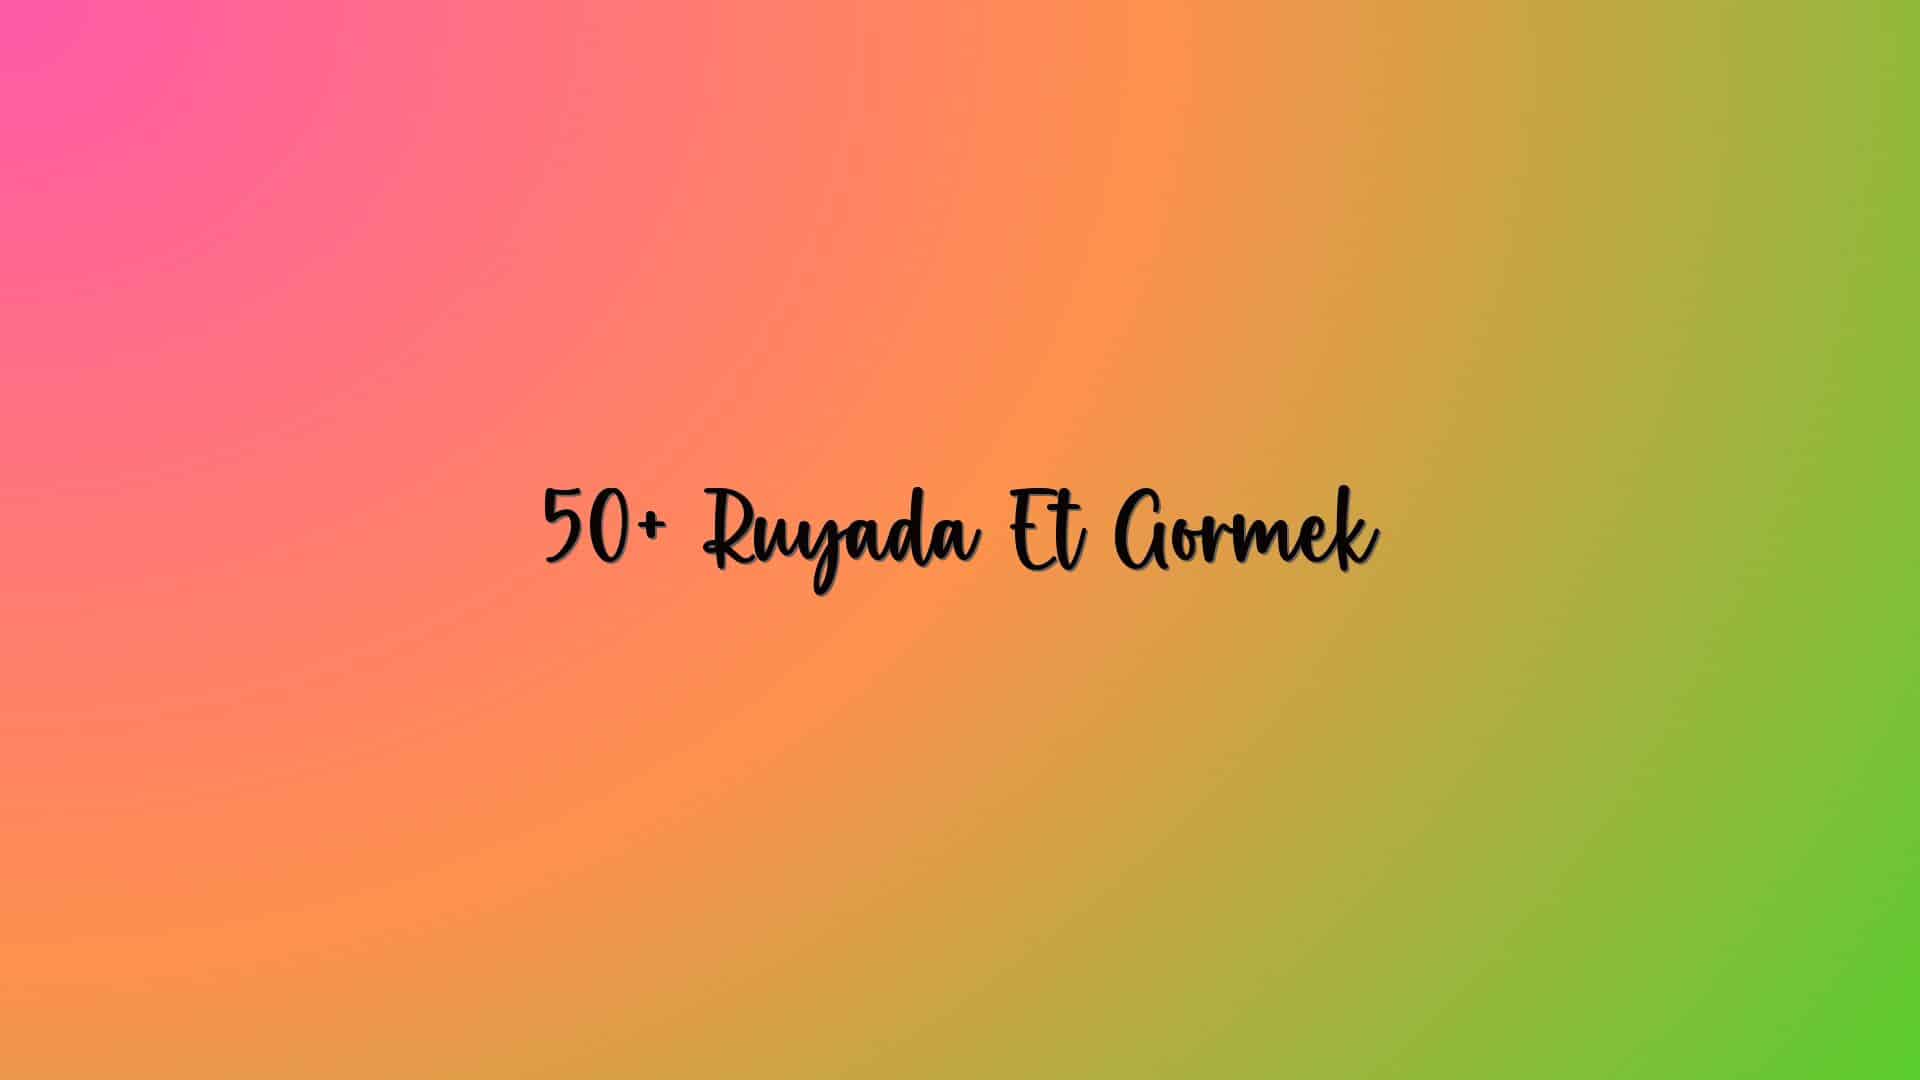 50+ Ruyada Et Gormek